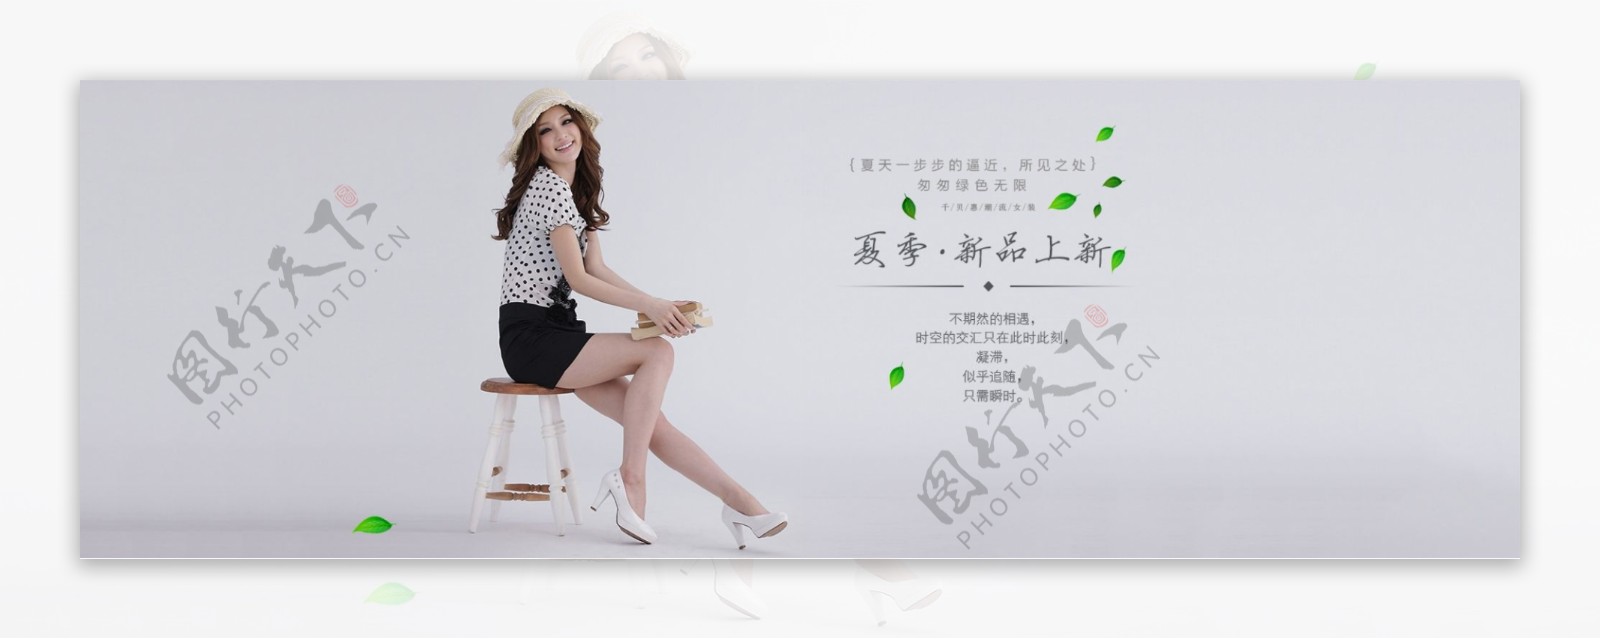 千贝惠女装夏季新品上市促销主题海报